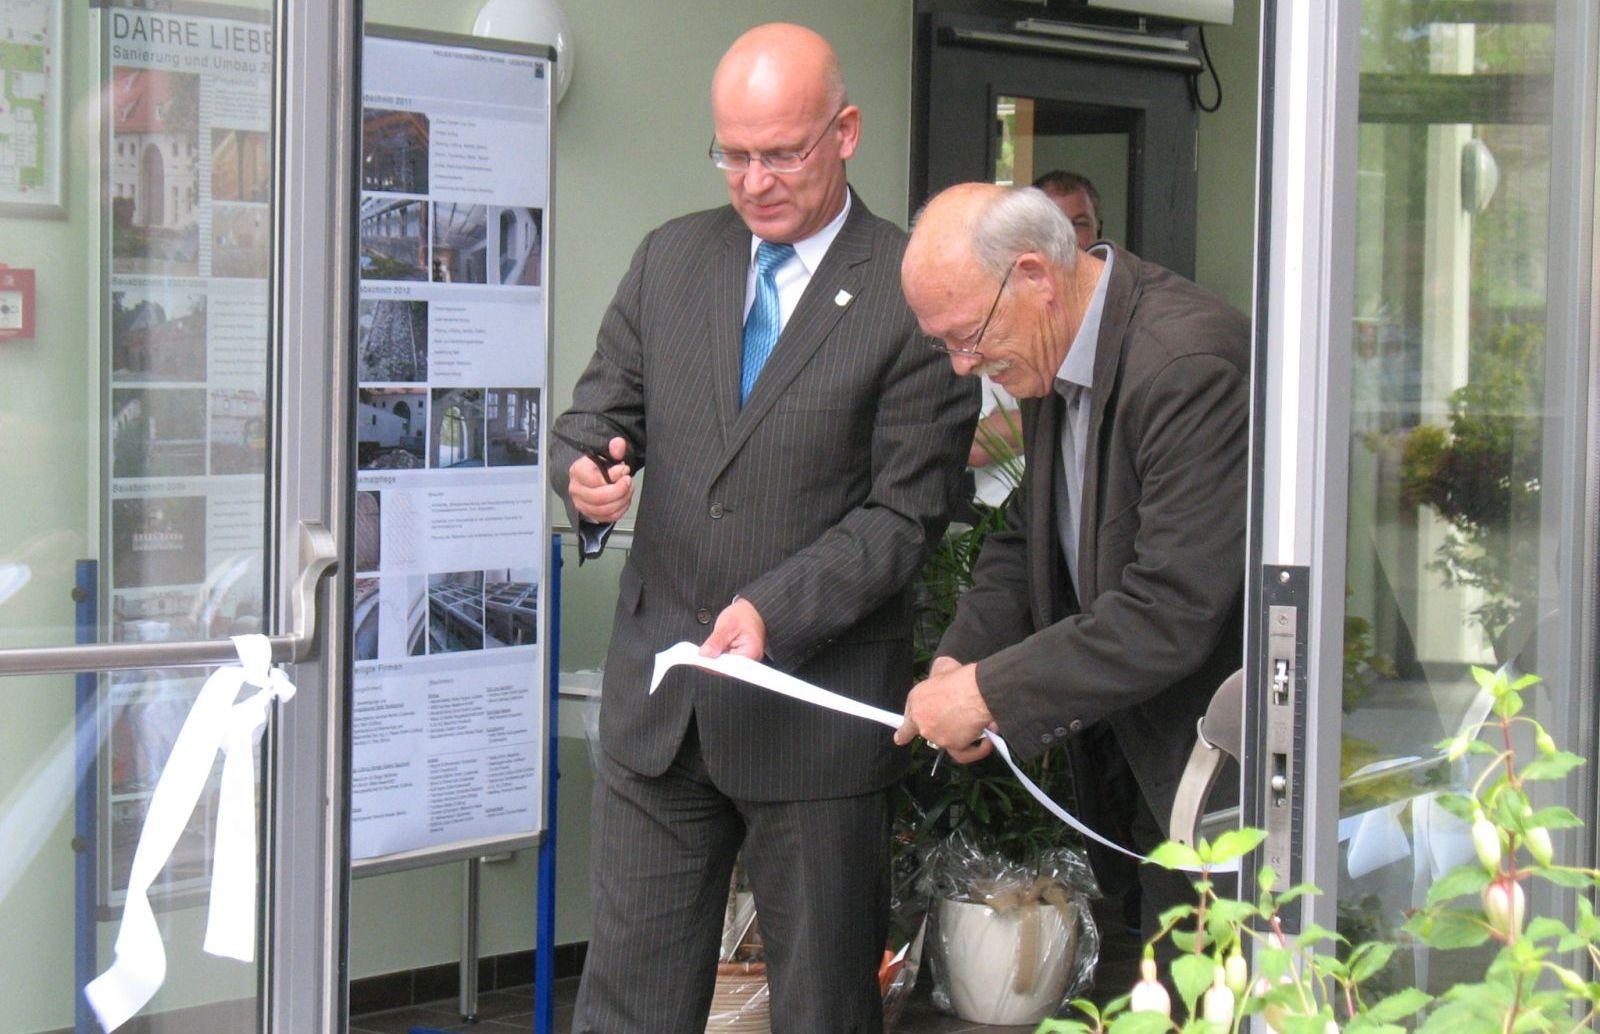 Landrat Stephan Loge (l.) und Manfred Lischeski, ehrenamtlicher Bürgermeister von Lieberose, übergaben gemeinsam am 9. Juni 2012 das Bürgerzentrum Darre der Öffentlichkeit.  Foto: Projektierung Reinke